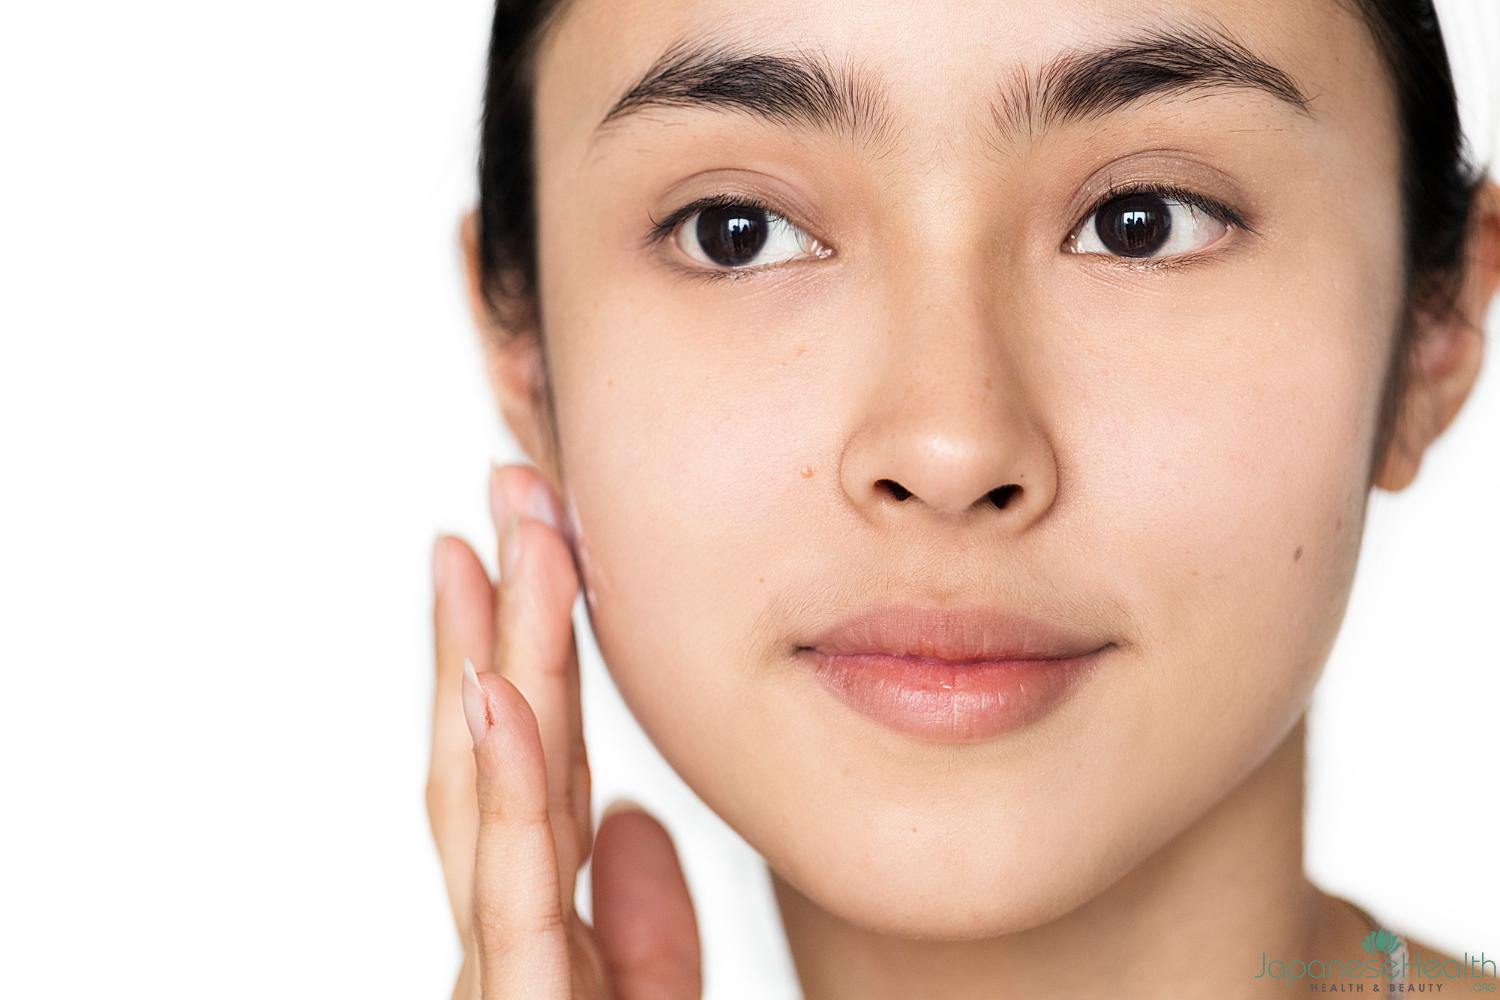 血行が促進されることで、顔全体のくすみやむくみが改善され、小顔効果が期待できます。